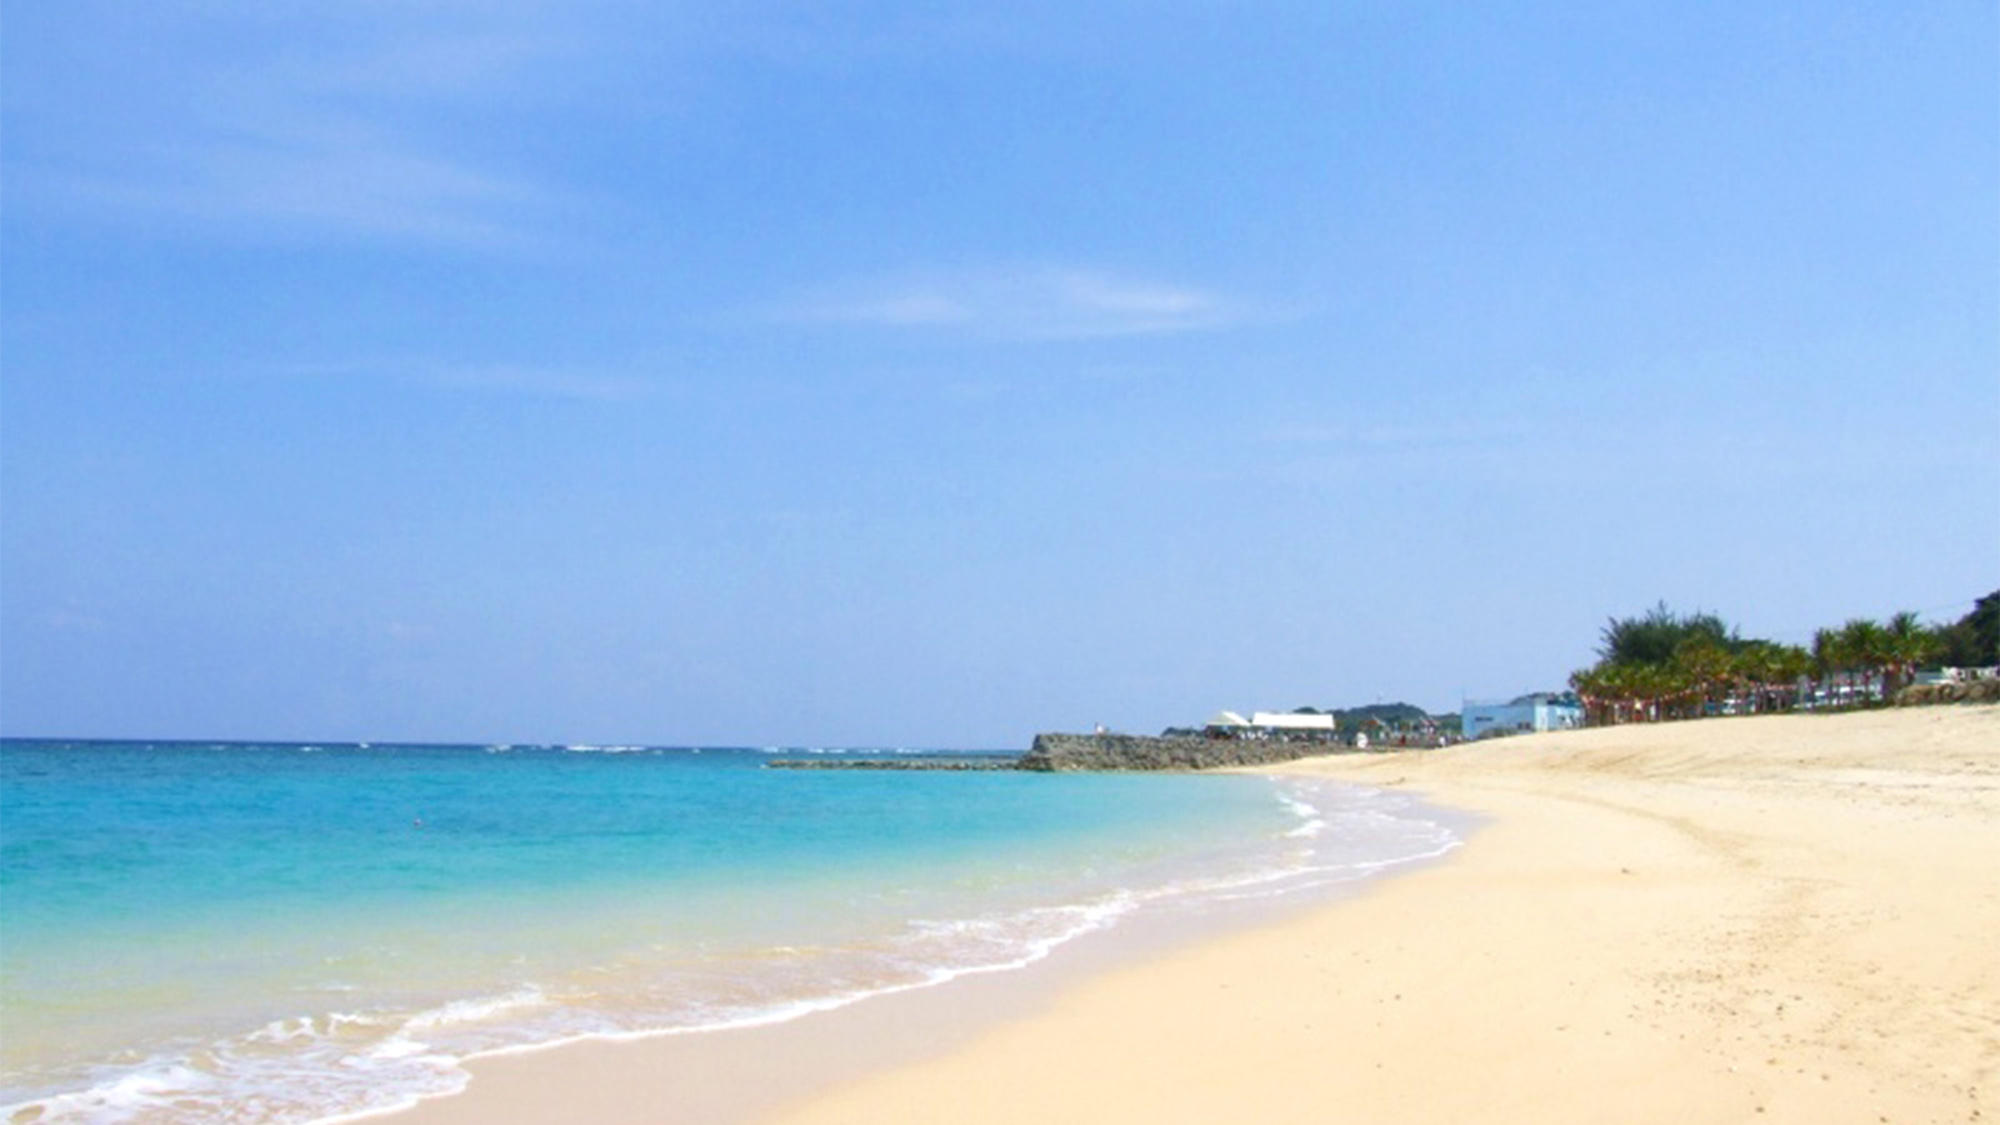 ・与名間ビーチ：真っ白な砂浜と青く透き通る海